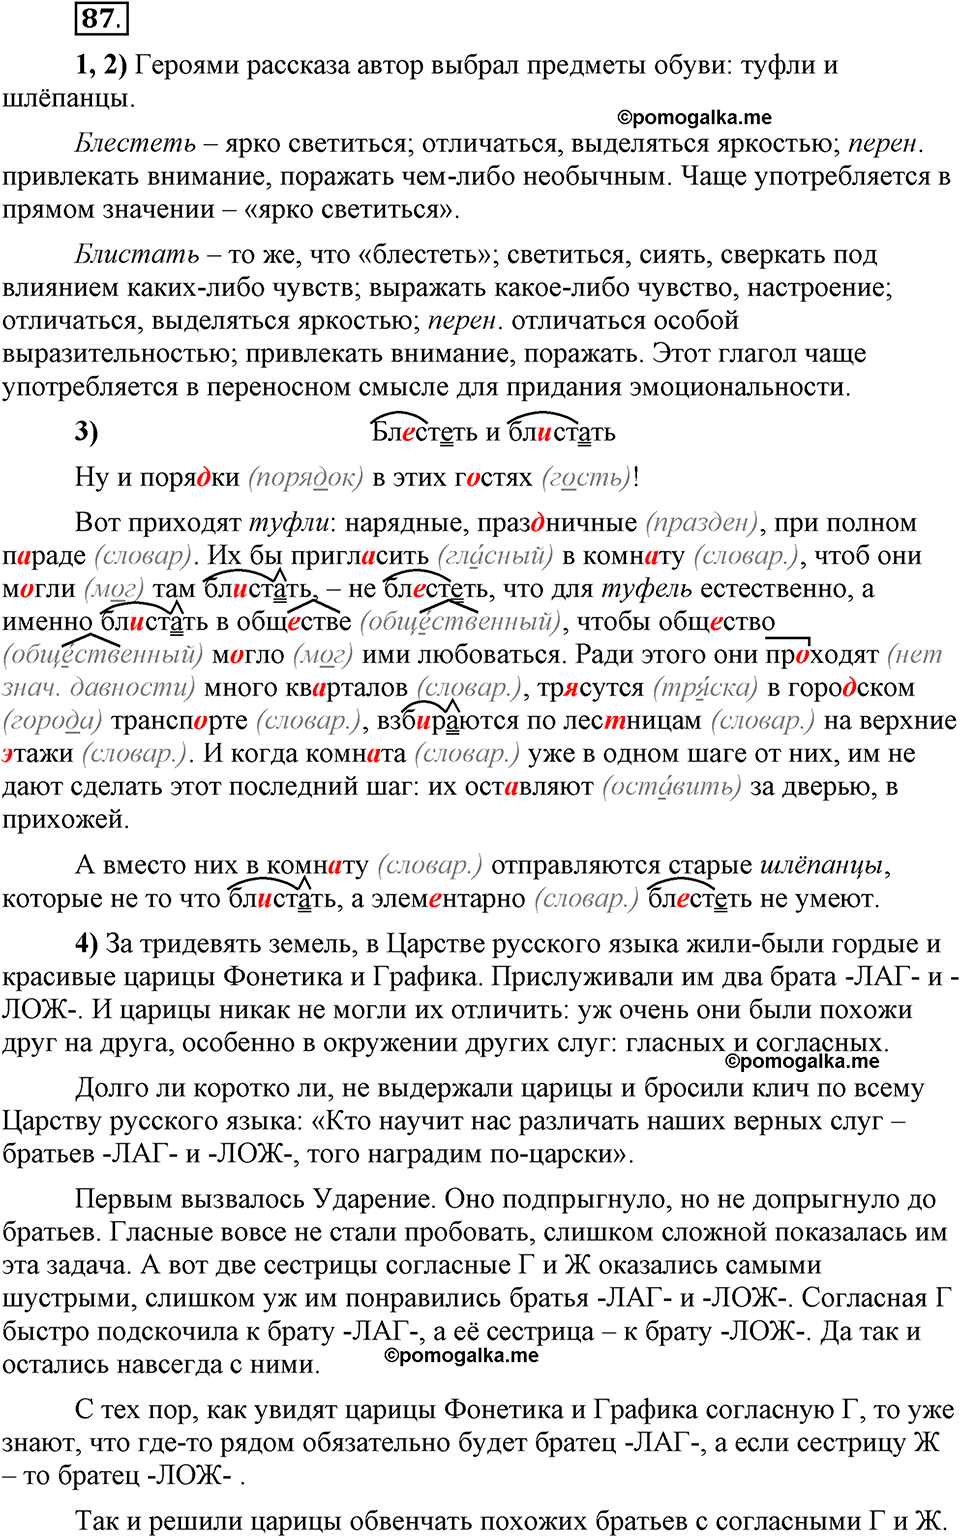 Глава 2. Упражнение №87 русский язык 6 класс Шмелёв